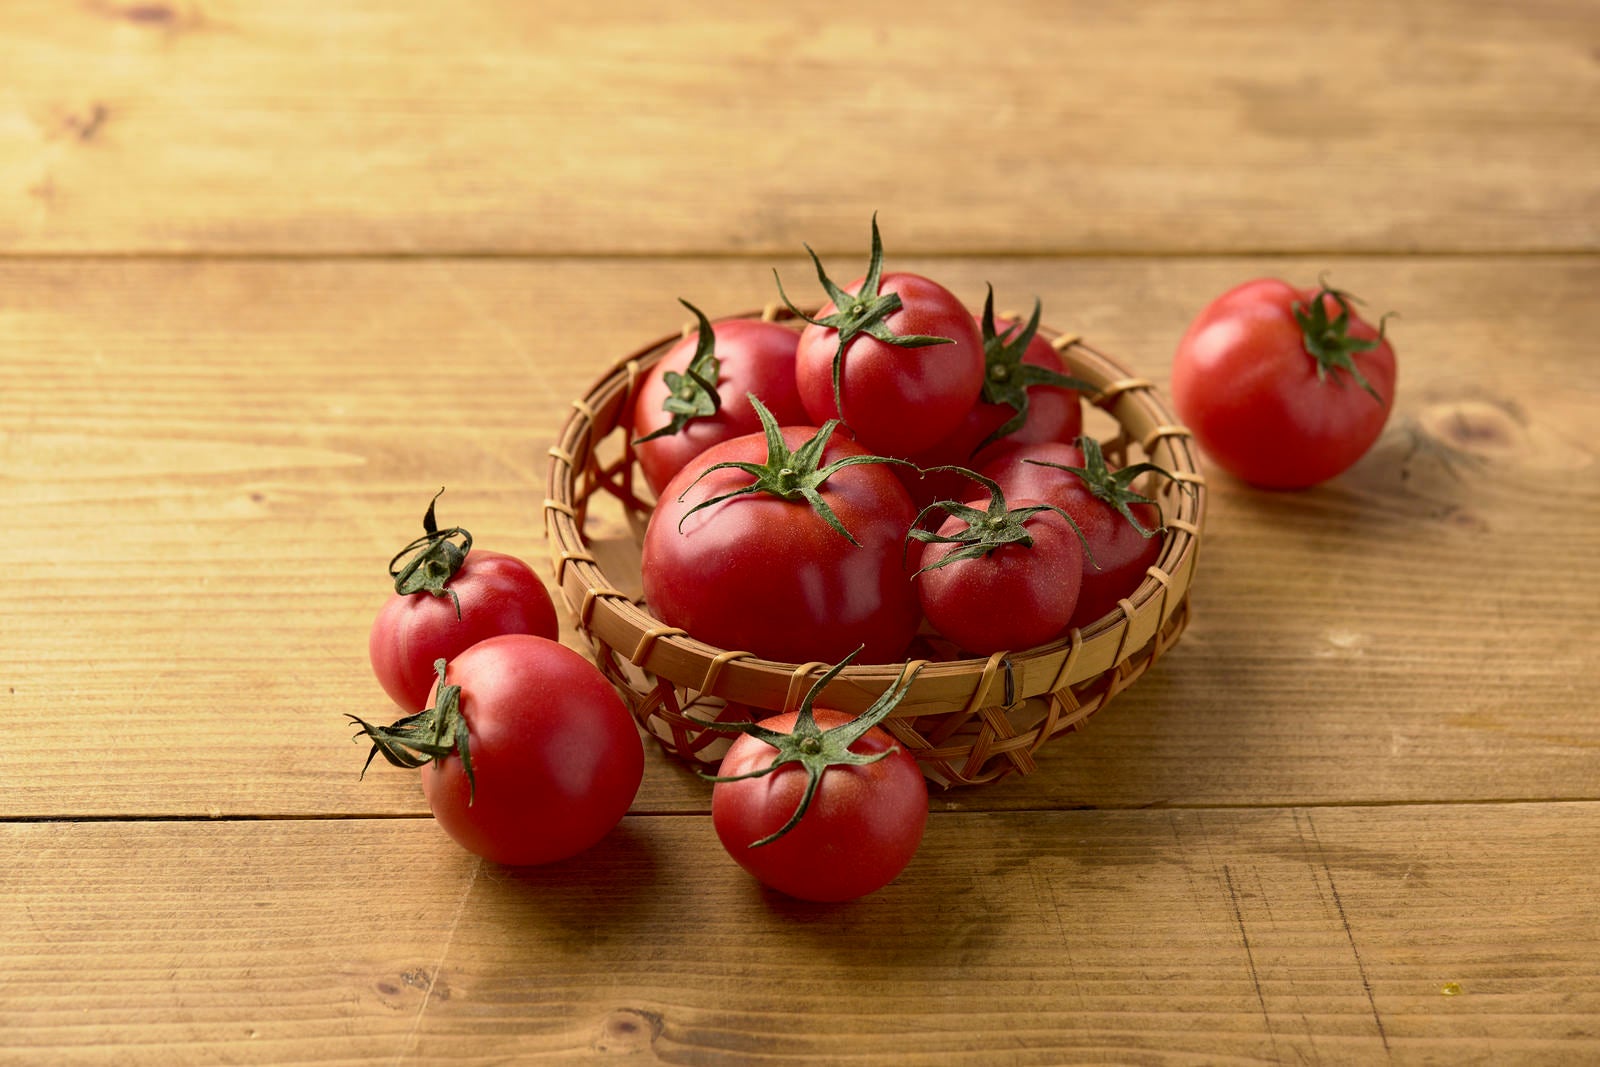 「籠から溢れたミニトマト」の写真